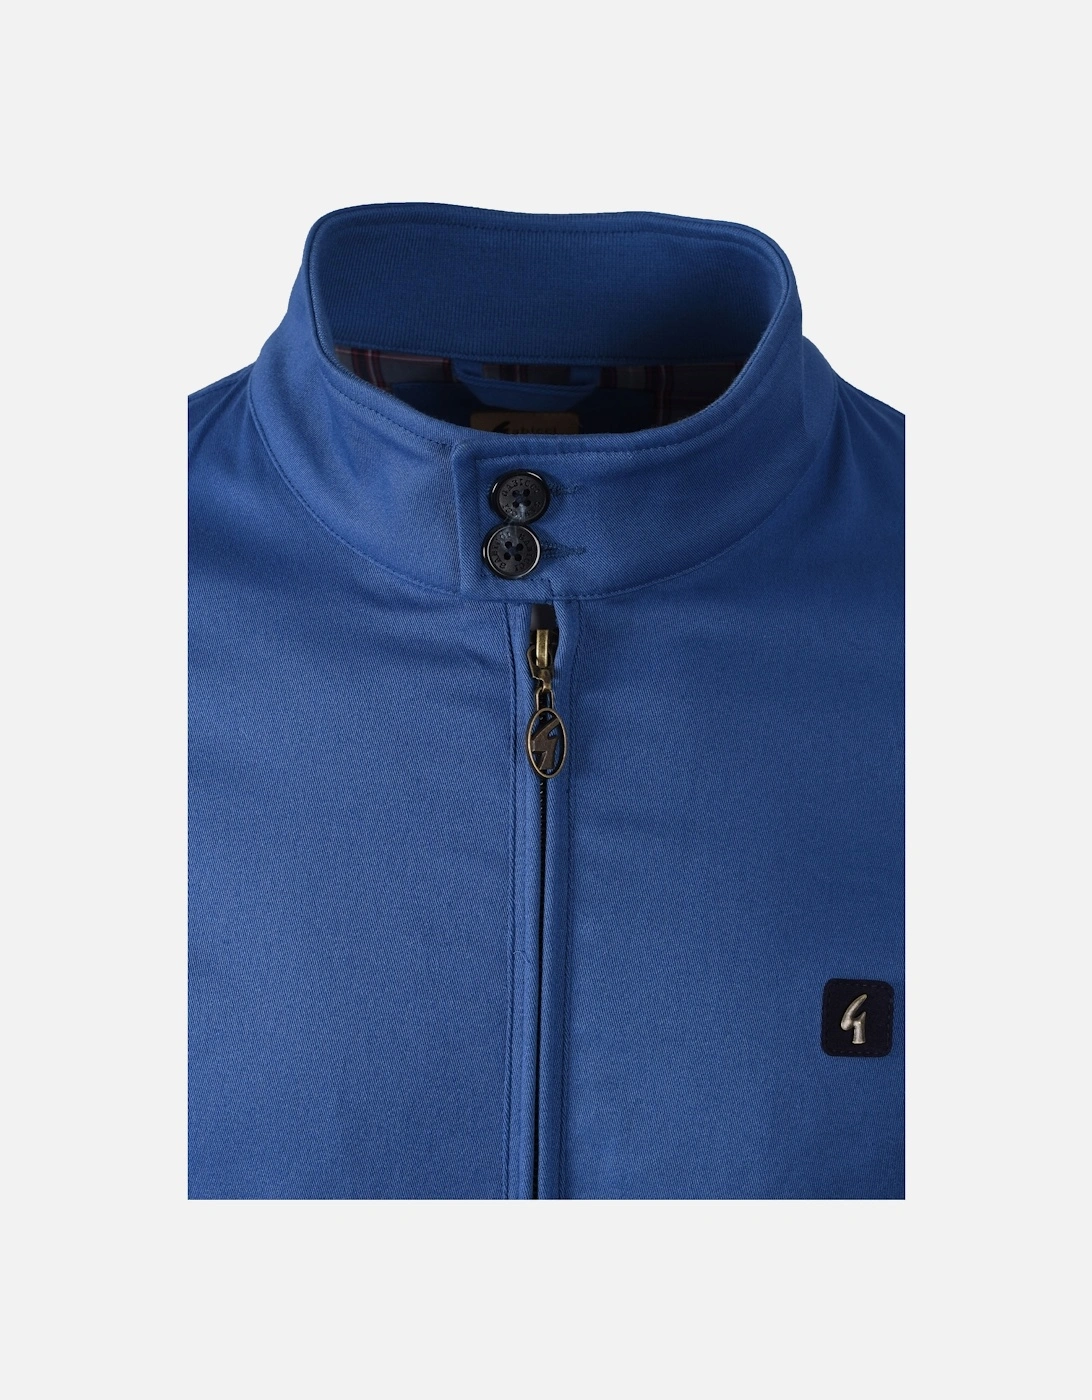 Vintage Harrington Jacket Blue